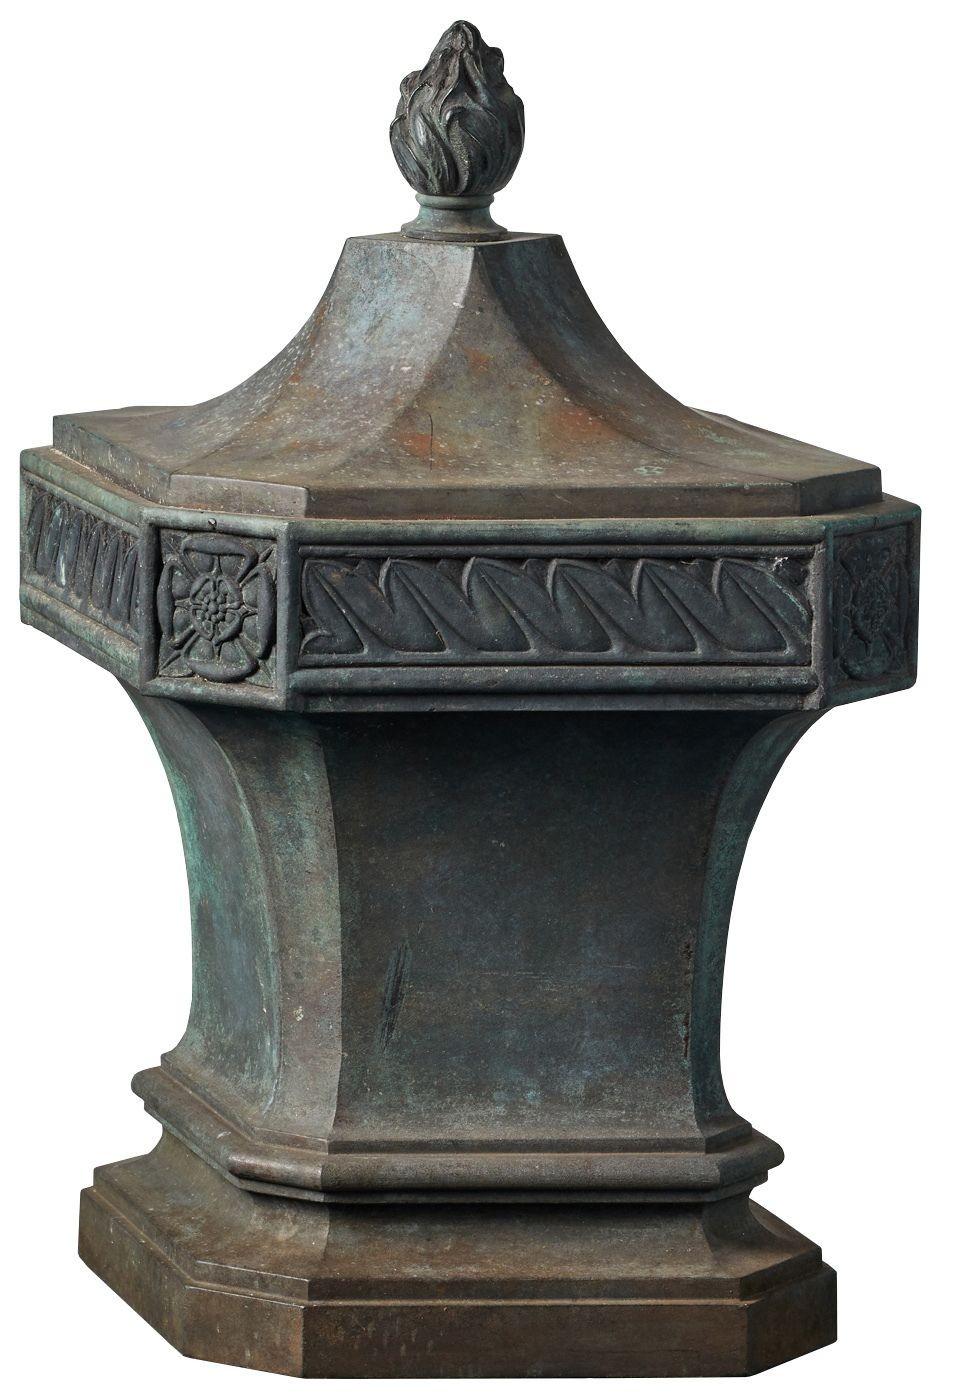 Antik geformter Bronzeknauf. Der rautenförmige Aufsatz hat eine patinierte Bronzeoberfläche mit einer Kappe im Flammenstil. Die Verzierung besteht aus stilisiertem Blattwerk und Tudor-Rosen.